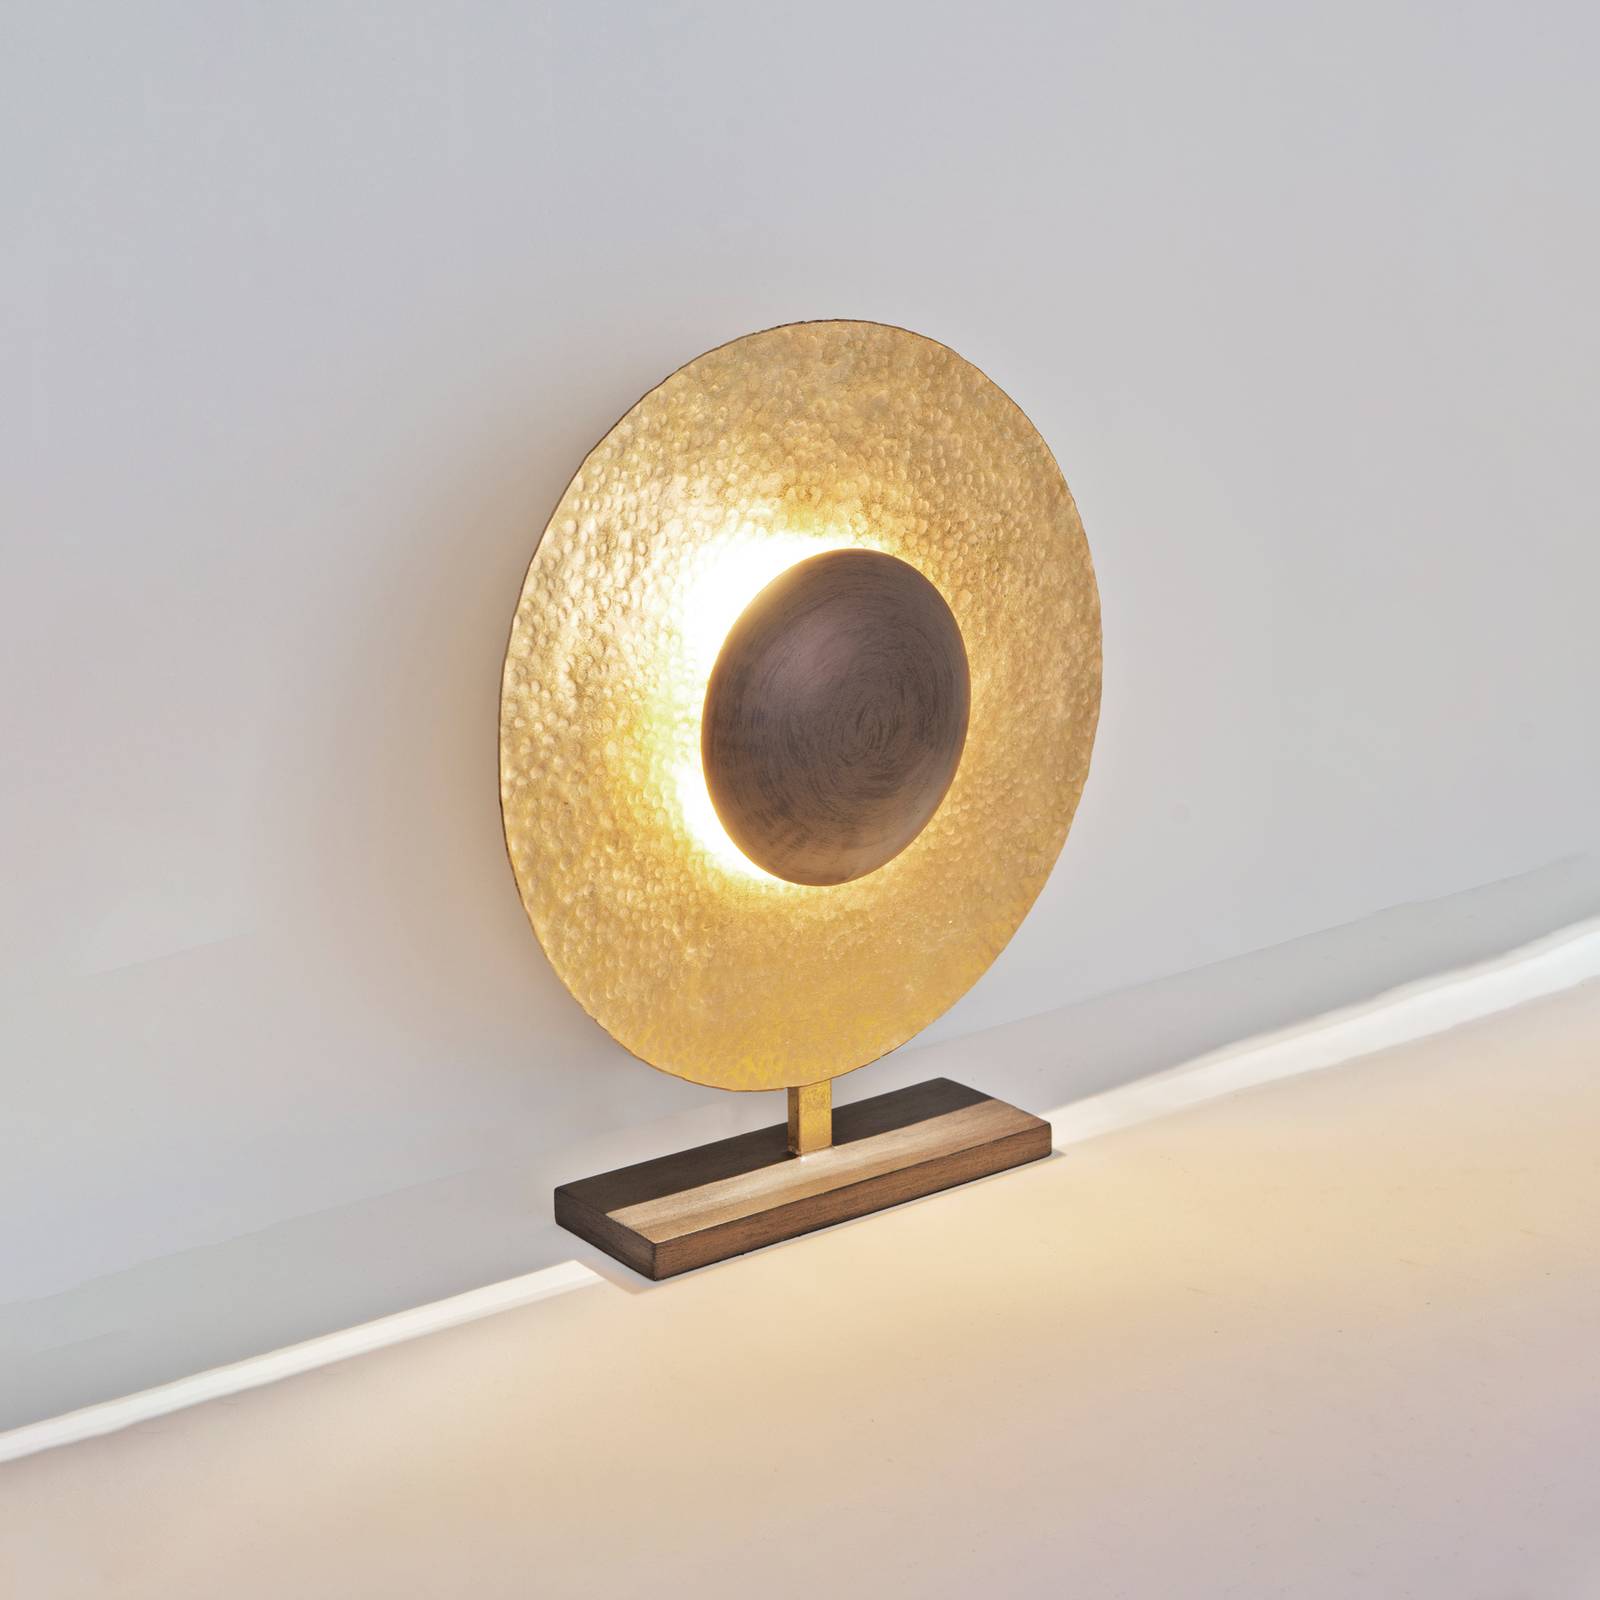 Holländer asztali lámpa satellite 52 cm magas arany/barna